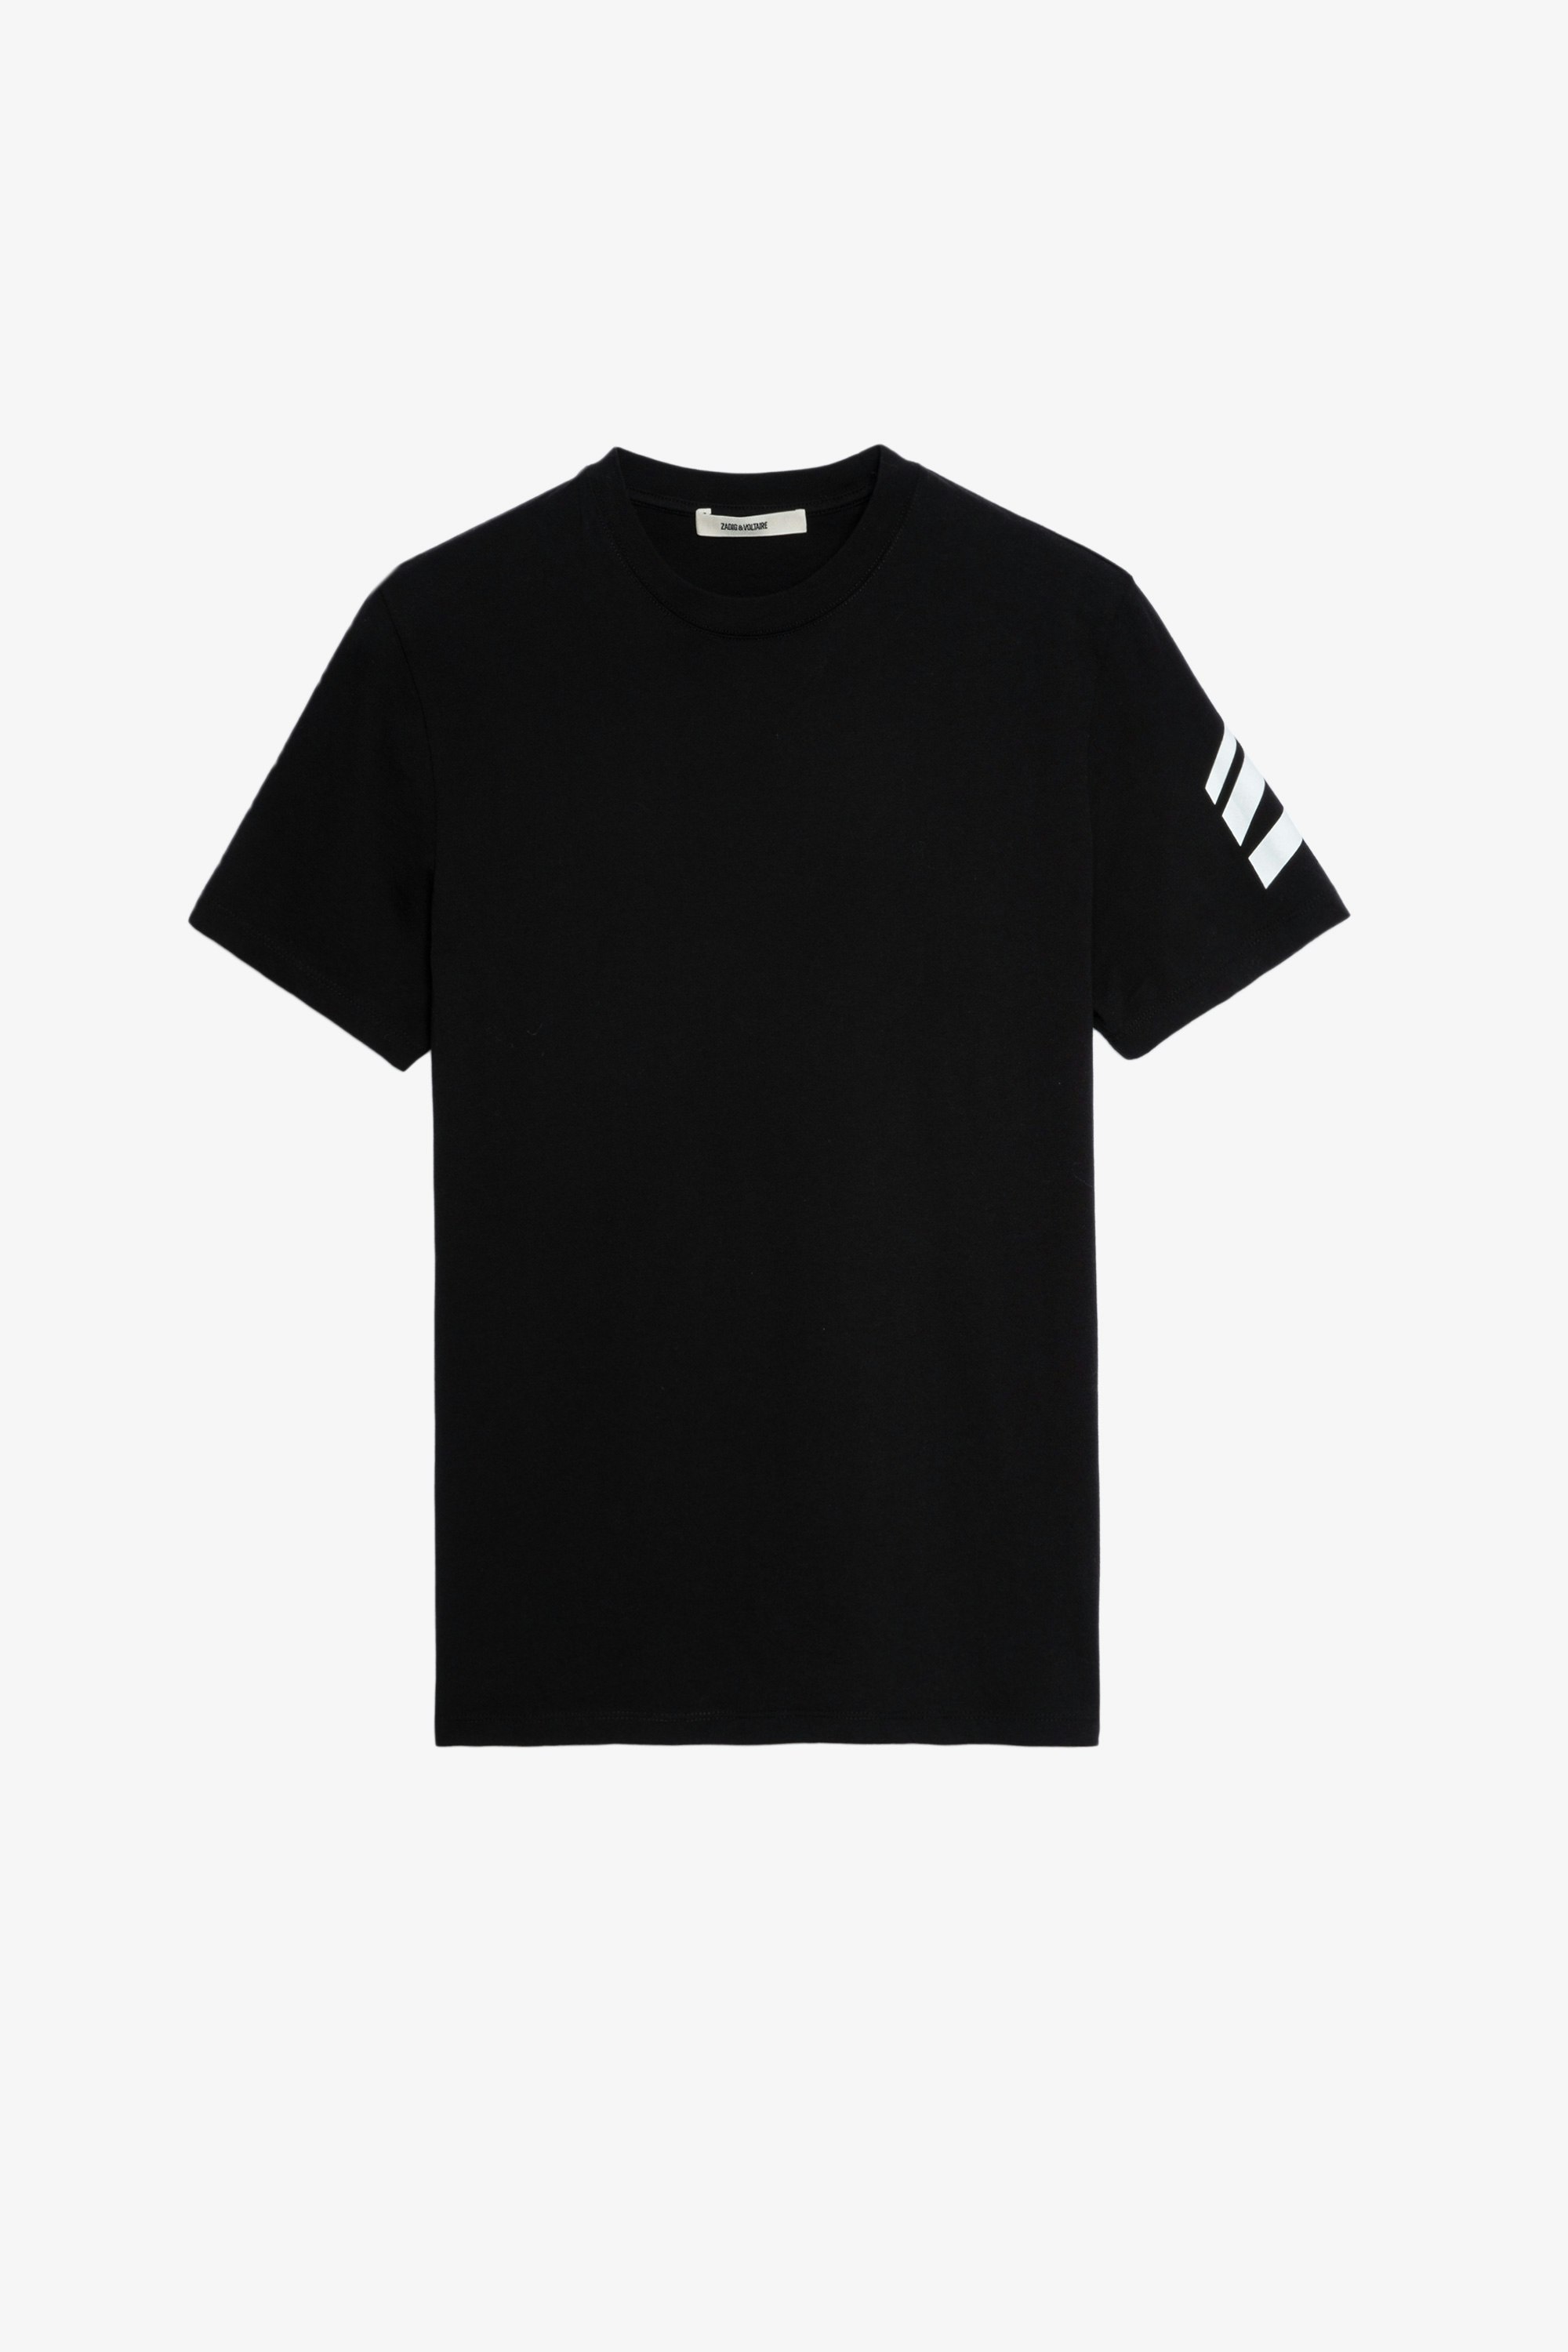 T-Shirt Tommy HC Arrow Maglietta in cotone nero con freccia sulla manica sinistra Uomo